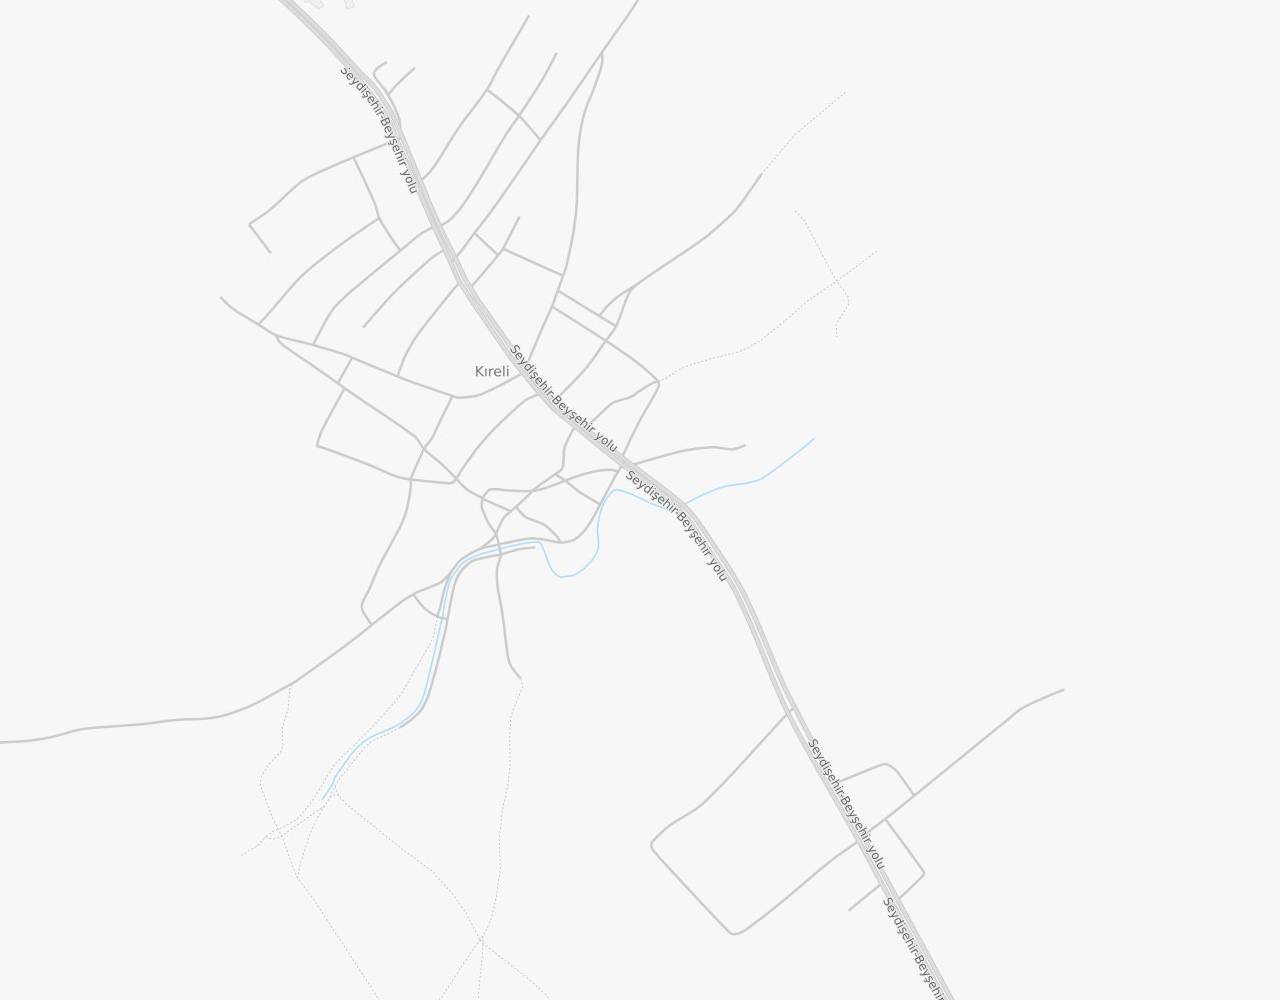 Konya Hüyük Kıreli Kasabası harita